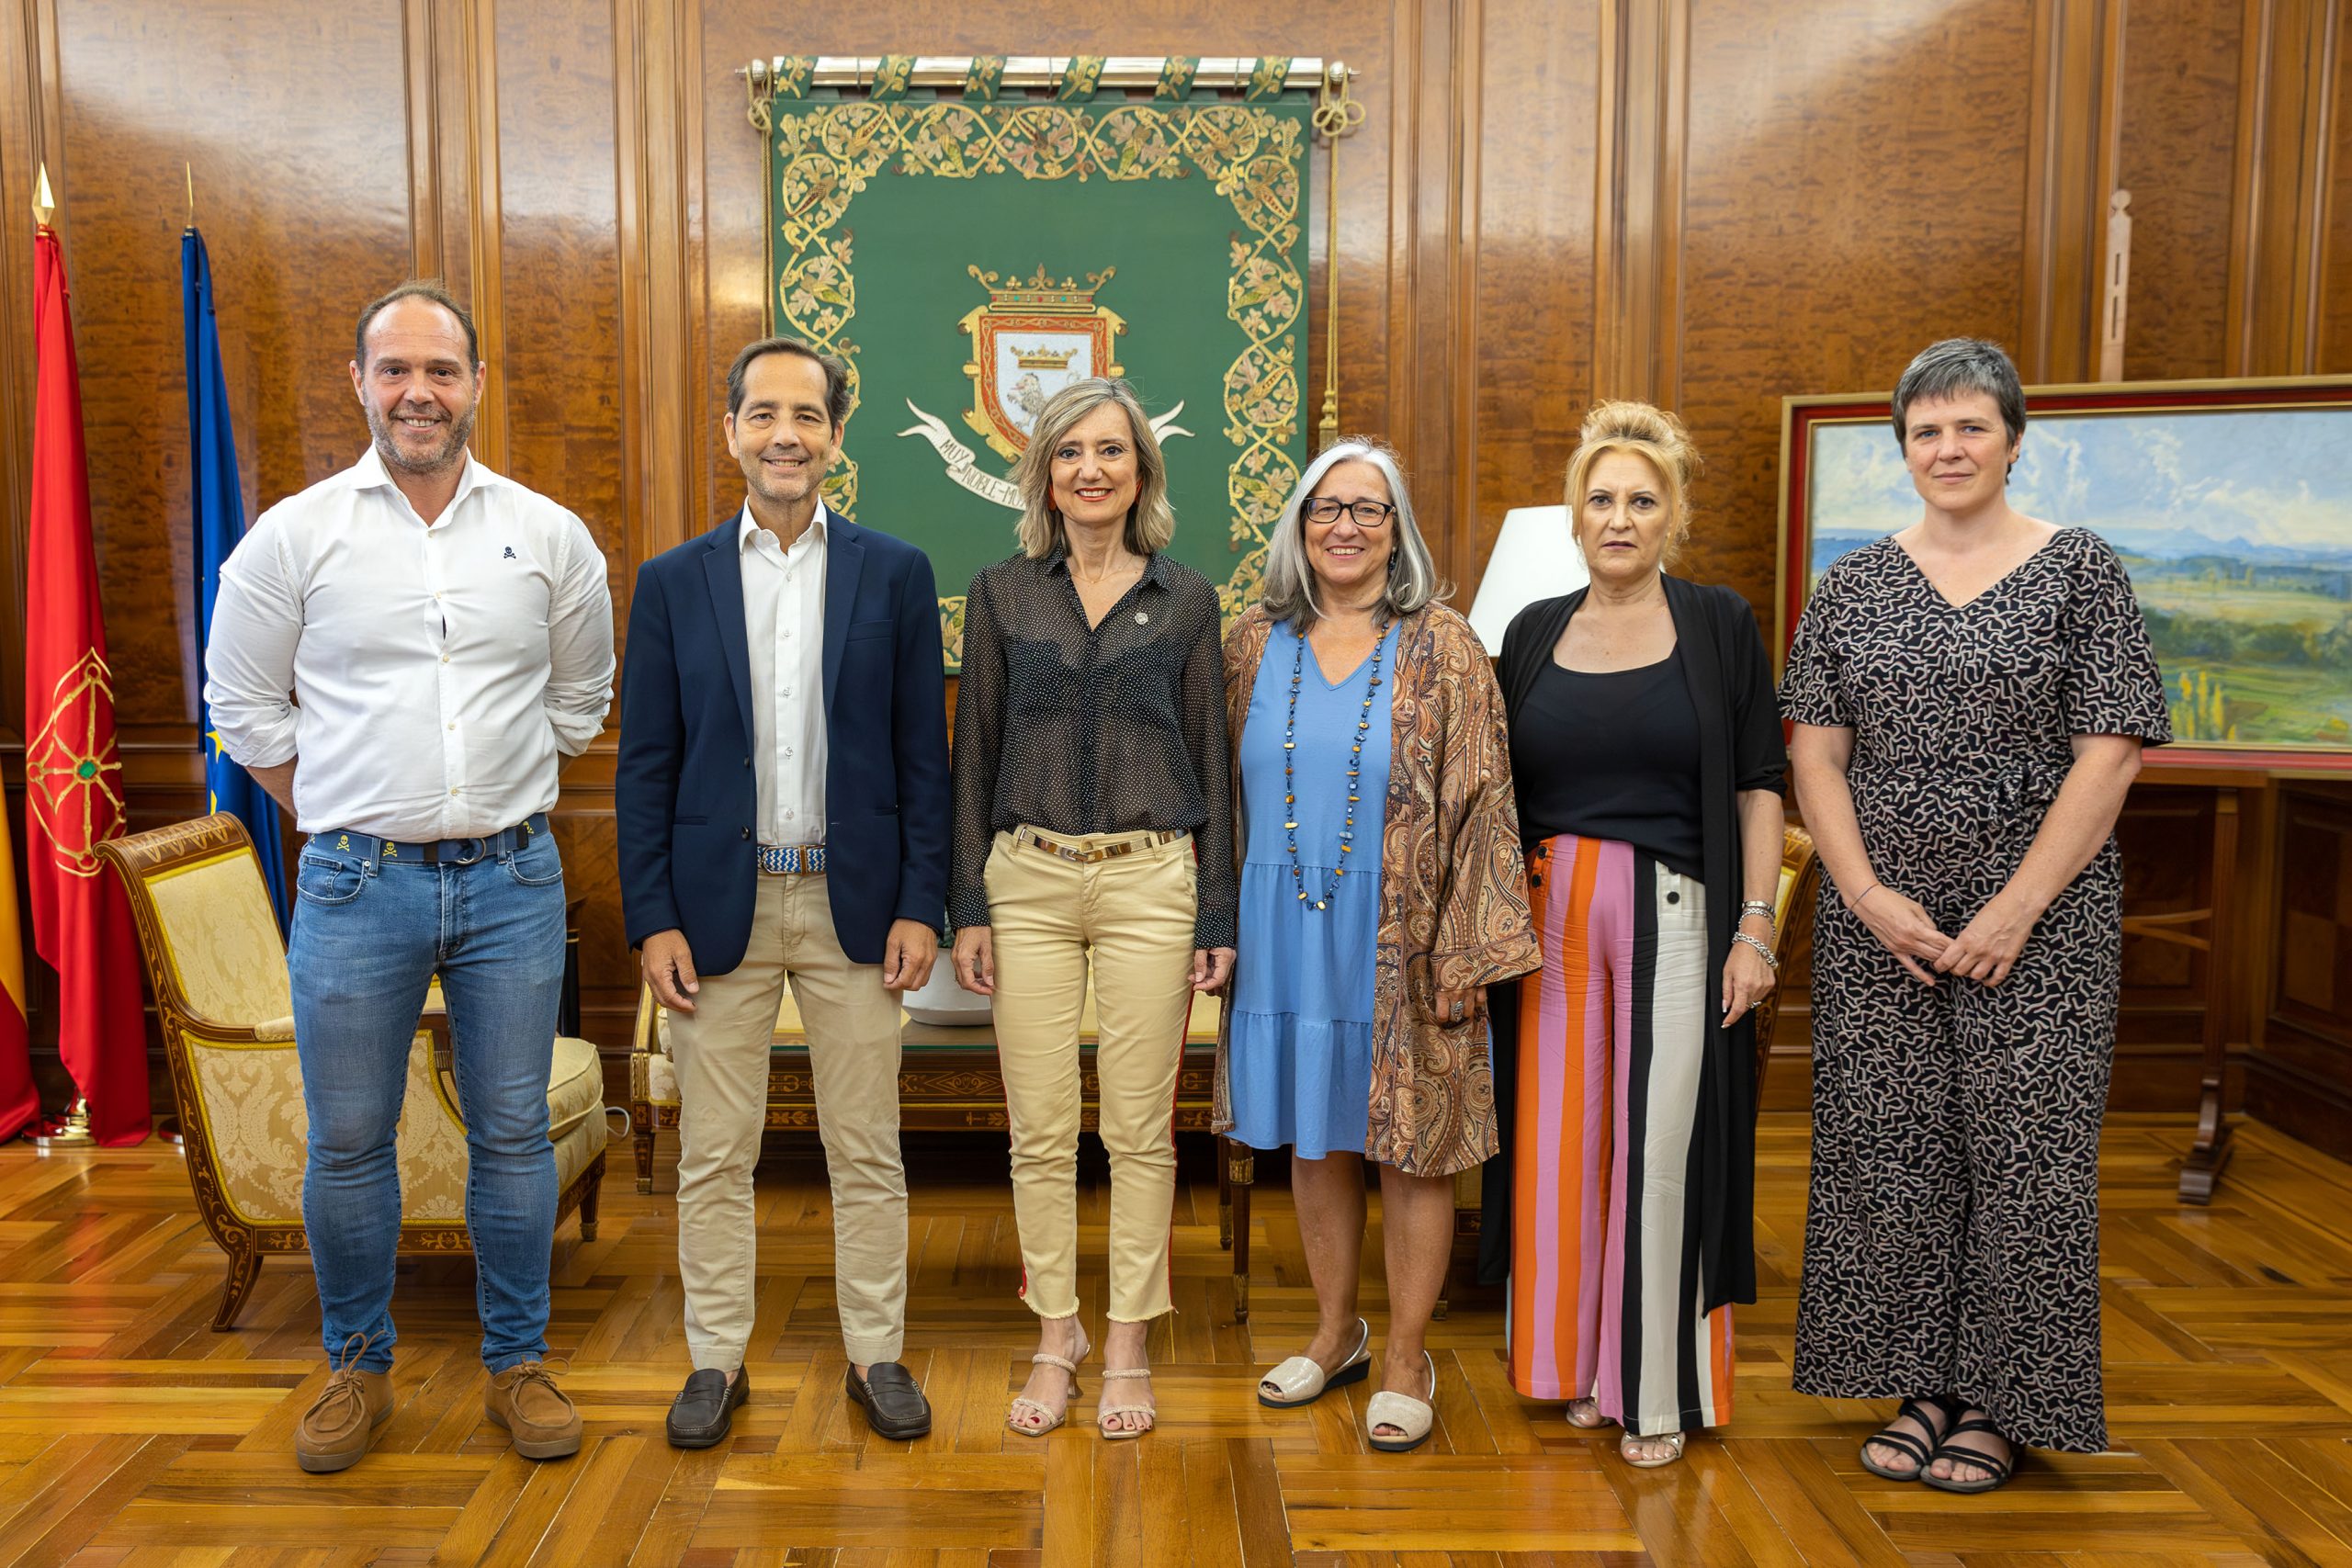 Los integrantes del Ayuntamiento de Pamplona y de CERMIN que se reunieron posan en la Casa Consistorial, delante de un estandarte con el escudo de Pamplona.